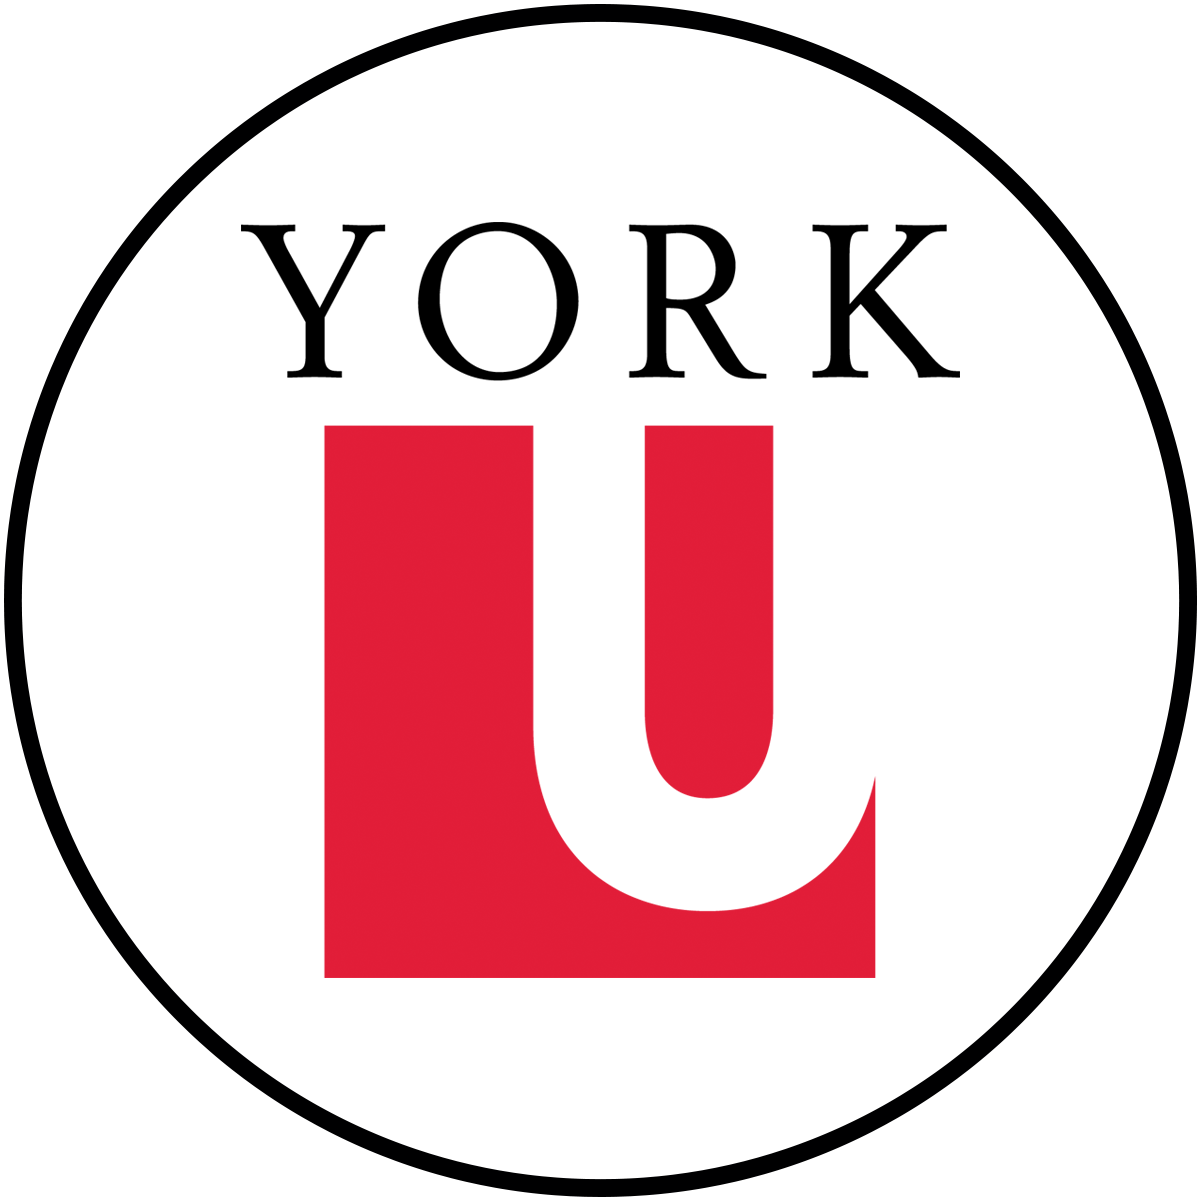 Logo of York University